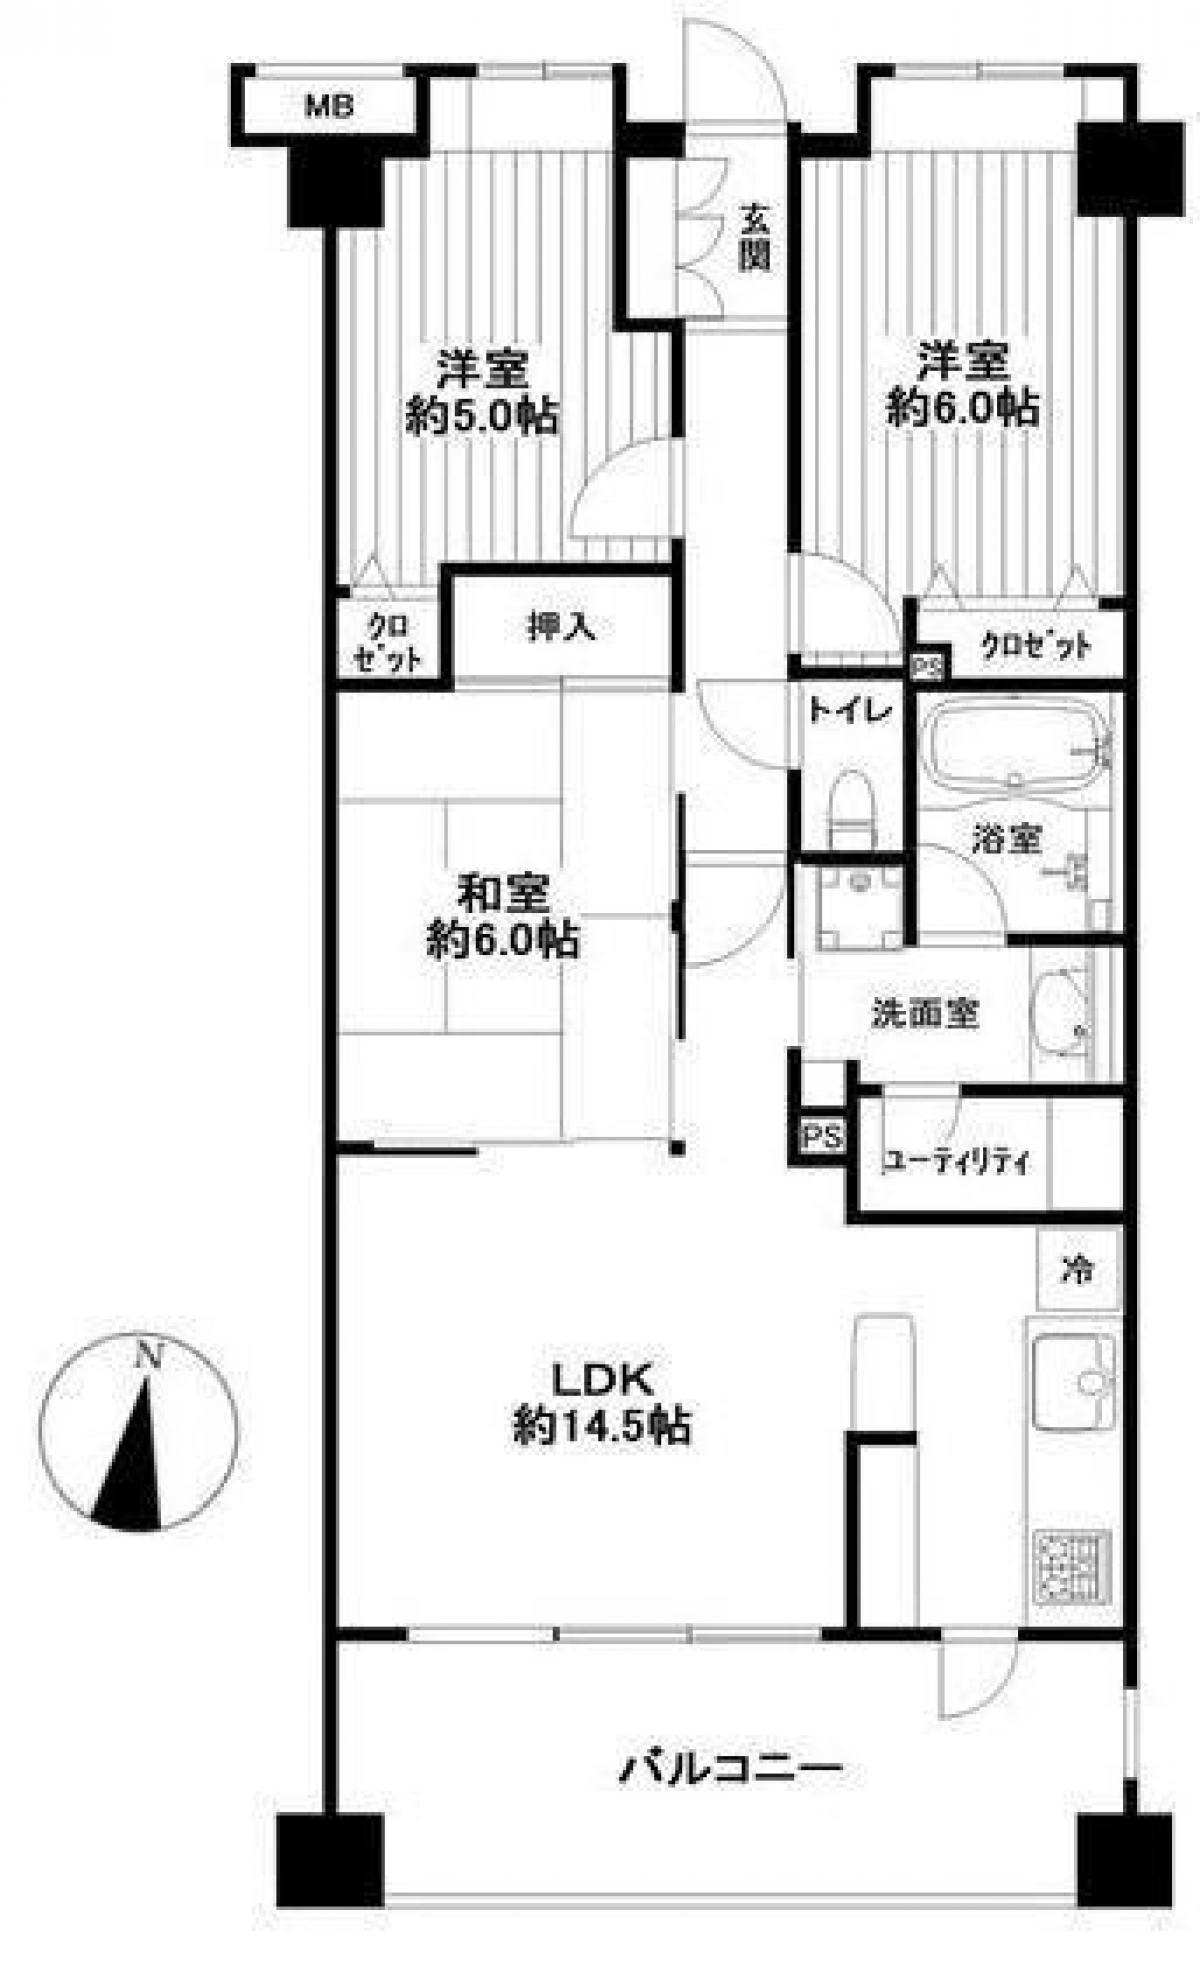 Picture of Apartment For Sale in Kumagaya Shi, Saitama, Japan